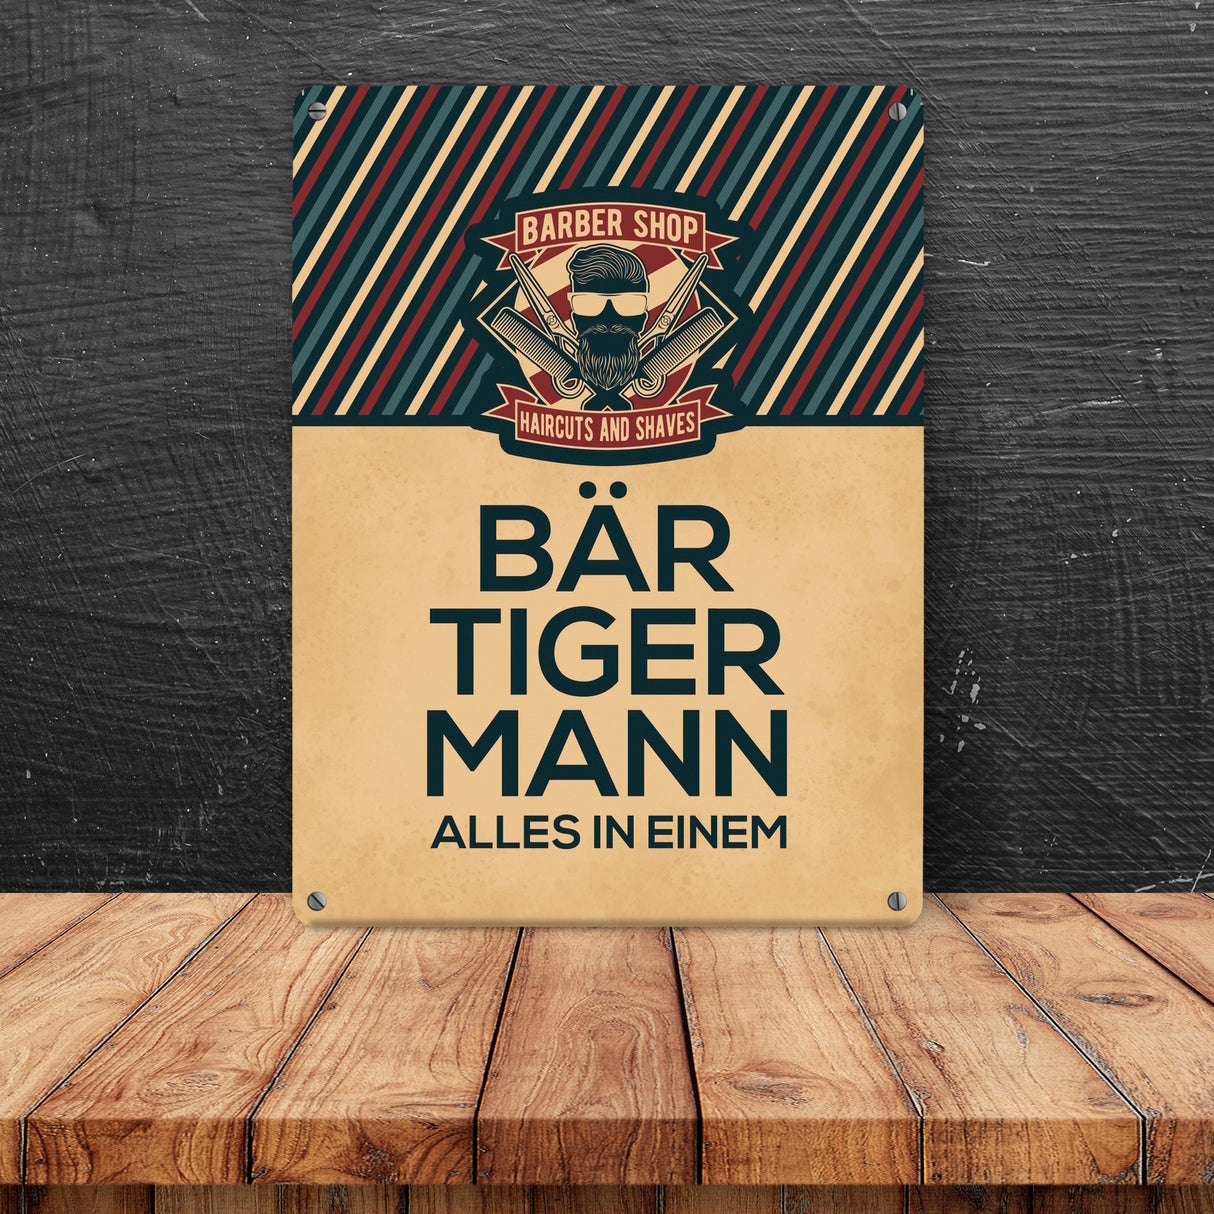 Bär-Tiger-Mann alles in einem Metallschild mit Barber-Shop Motiv